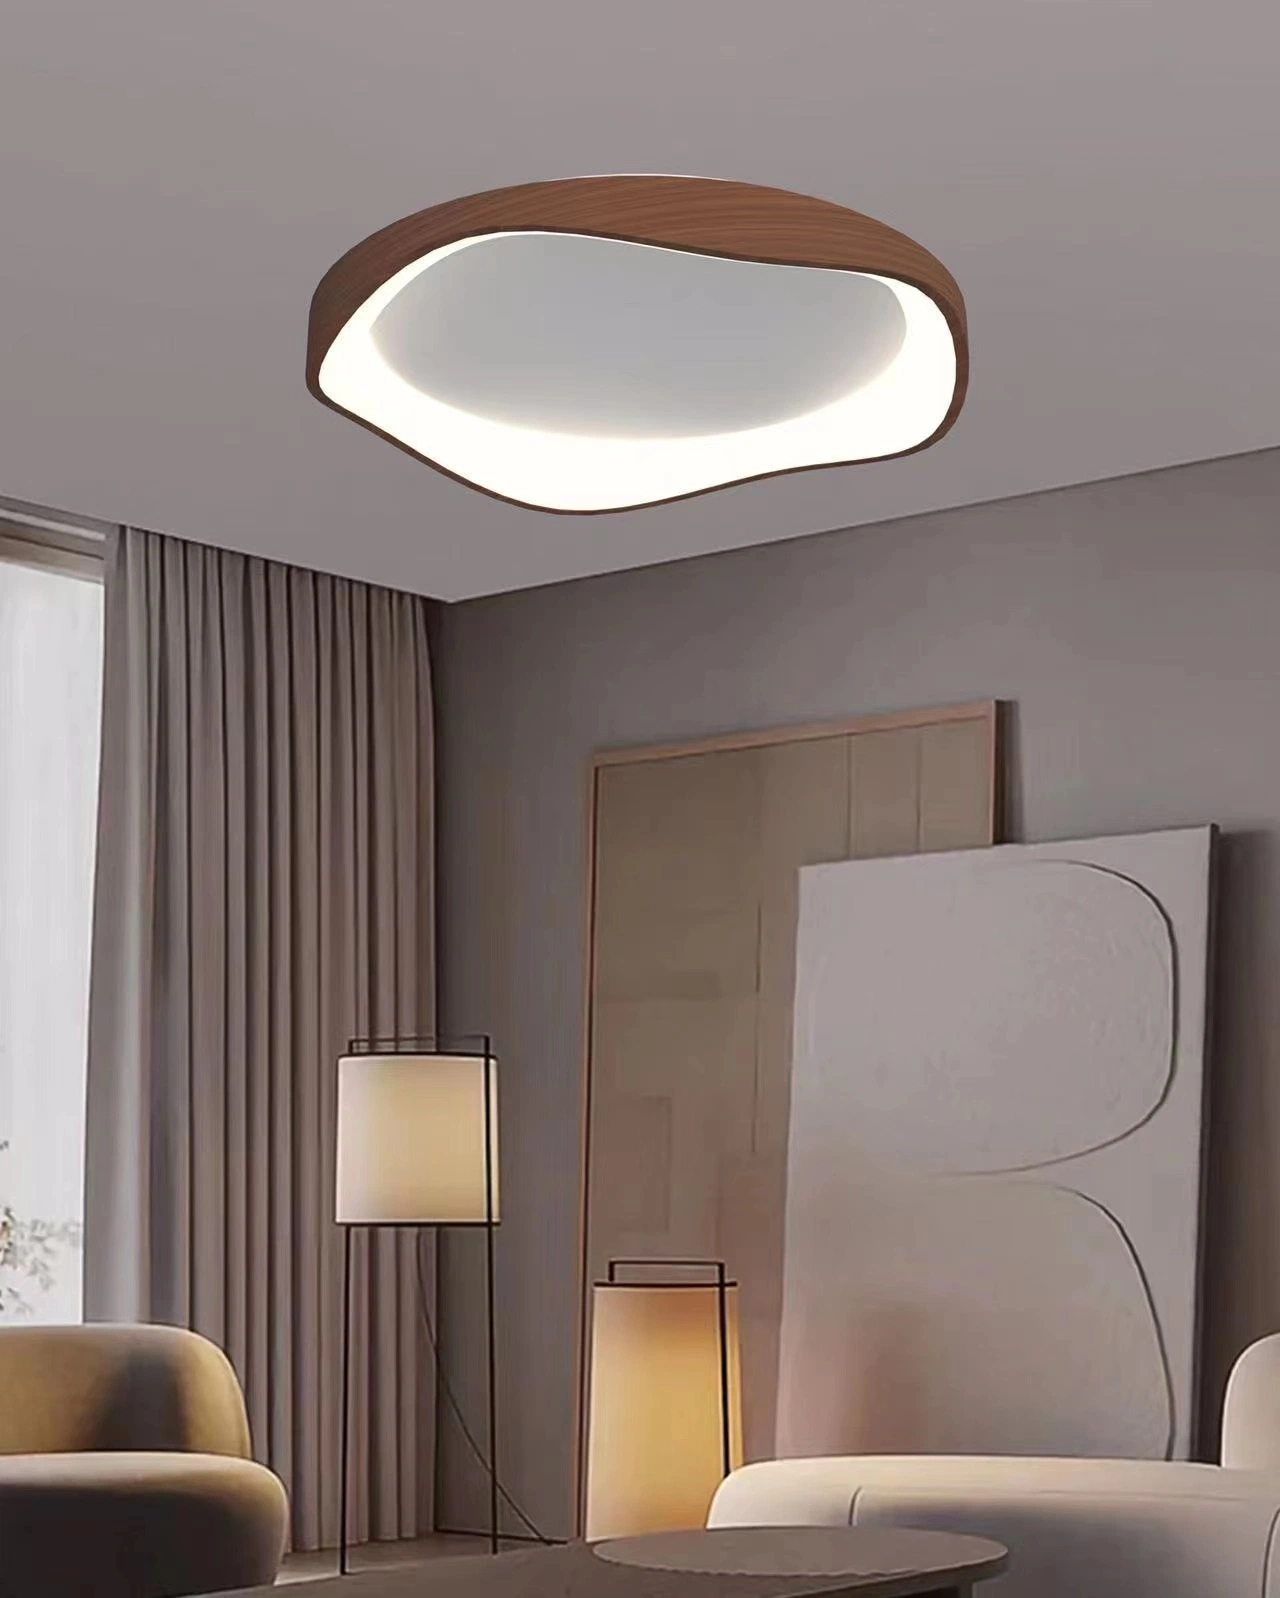 LED de fábrica de Masivel moderno Decorativo Metal Acrílico lámpara de techo LED Techo Casa de Hotel Interior Luz montada en el techo